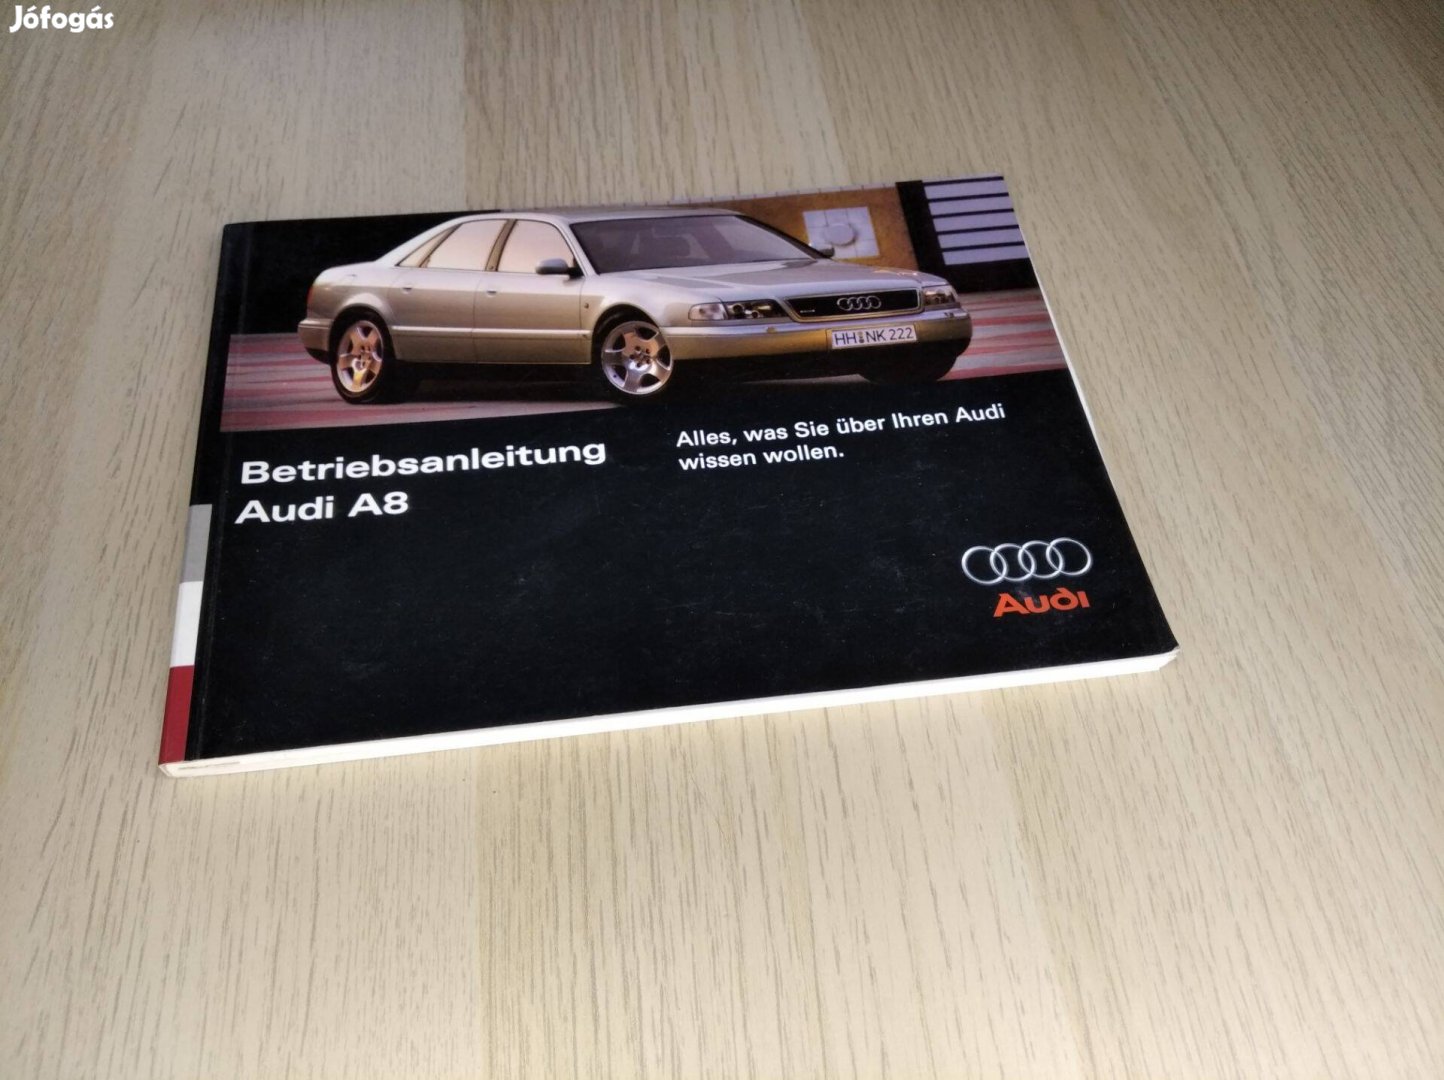 Audi A8 Kezelési utasítás 1995. (Német nyelvű )